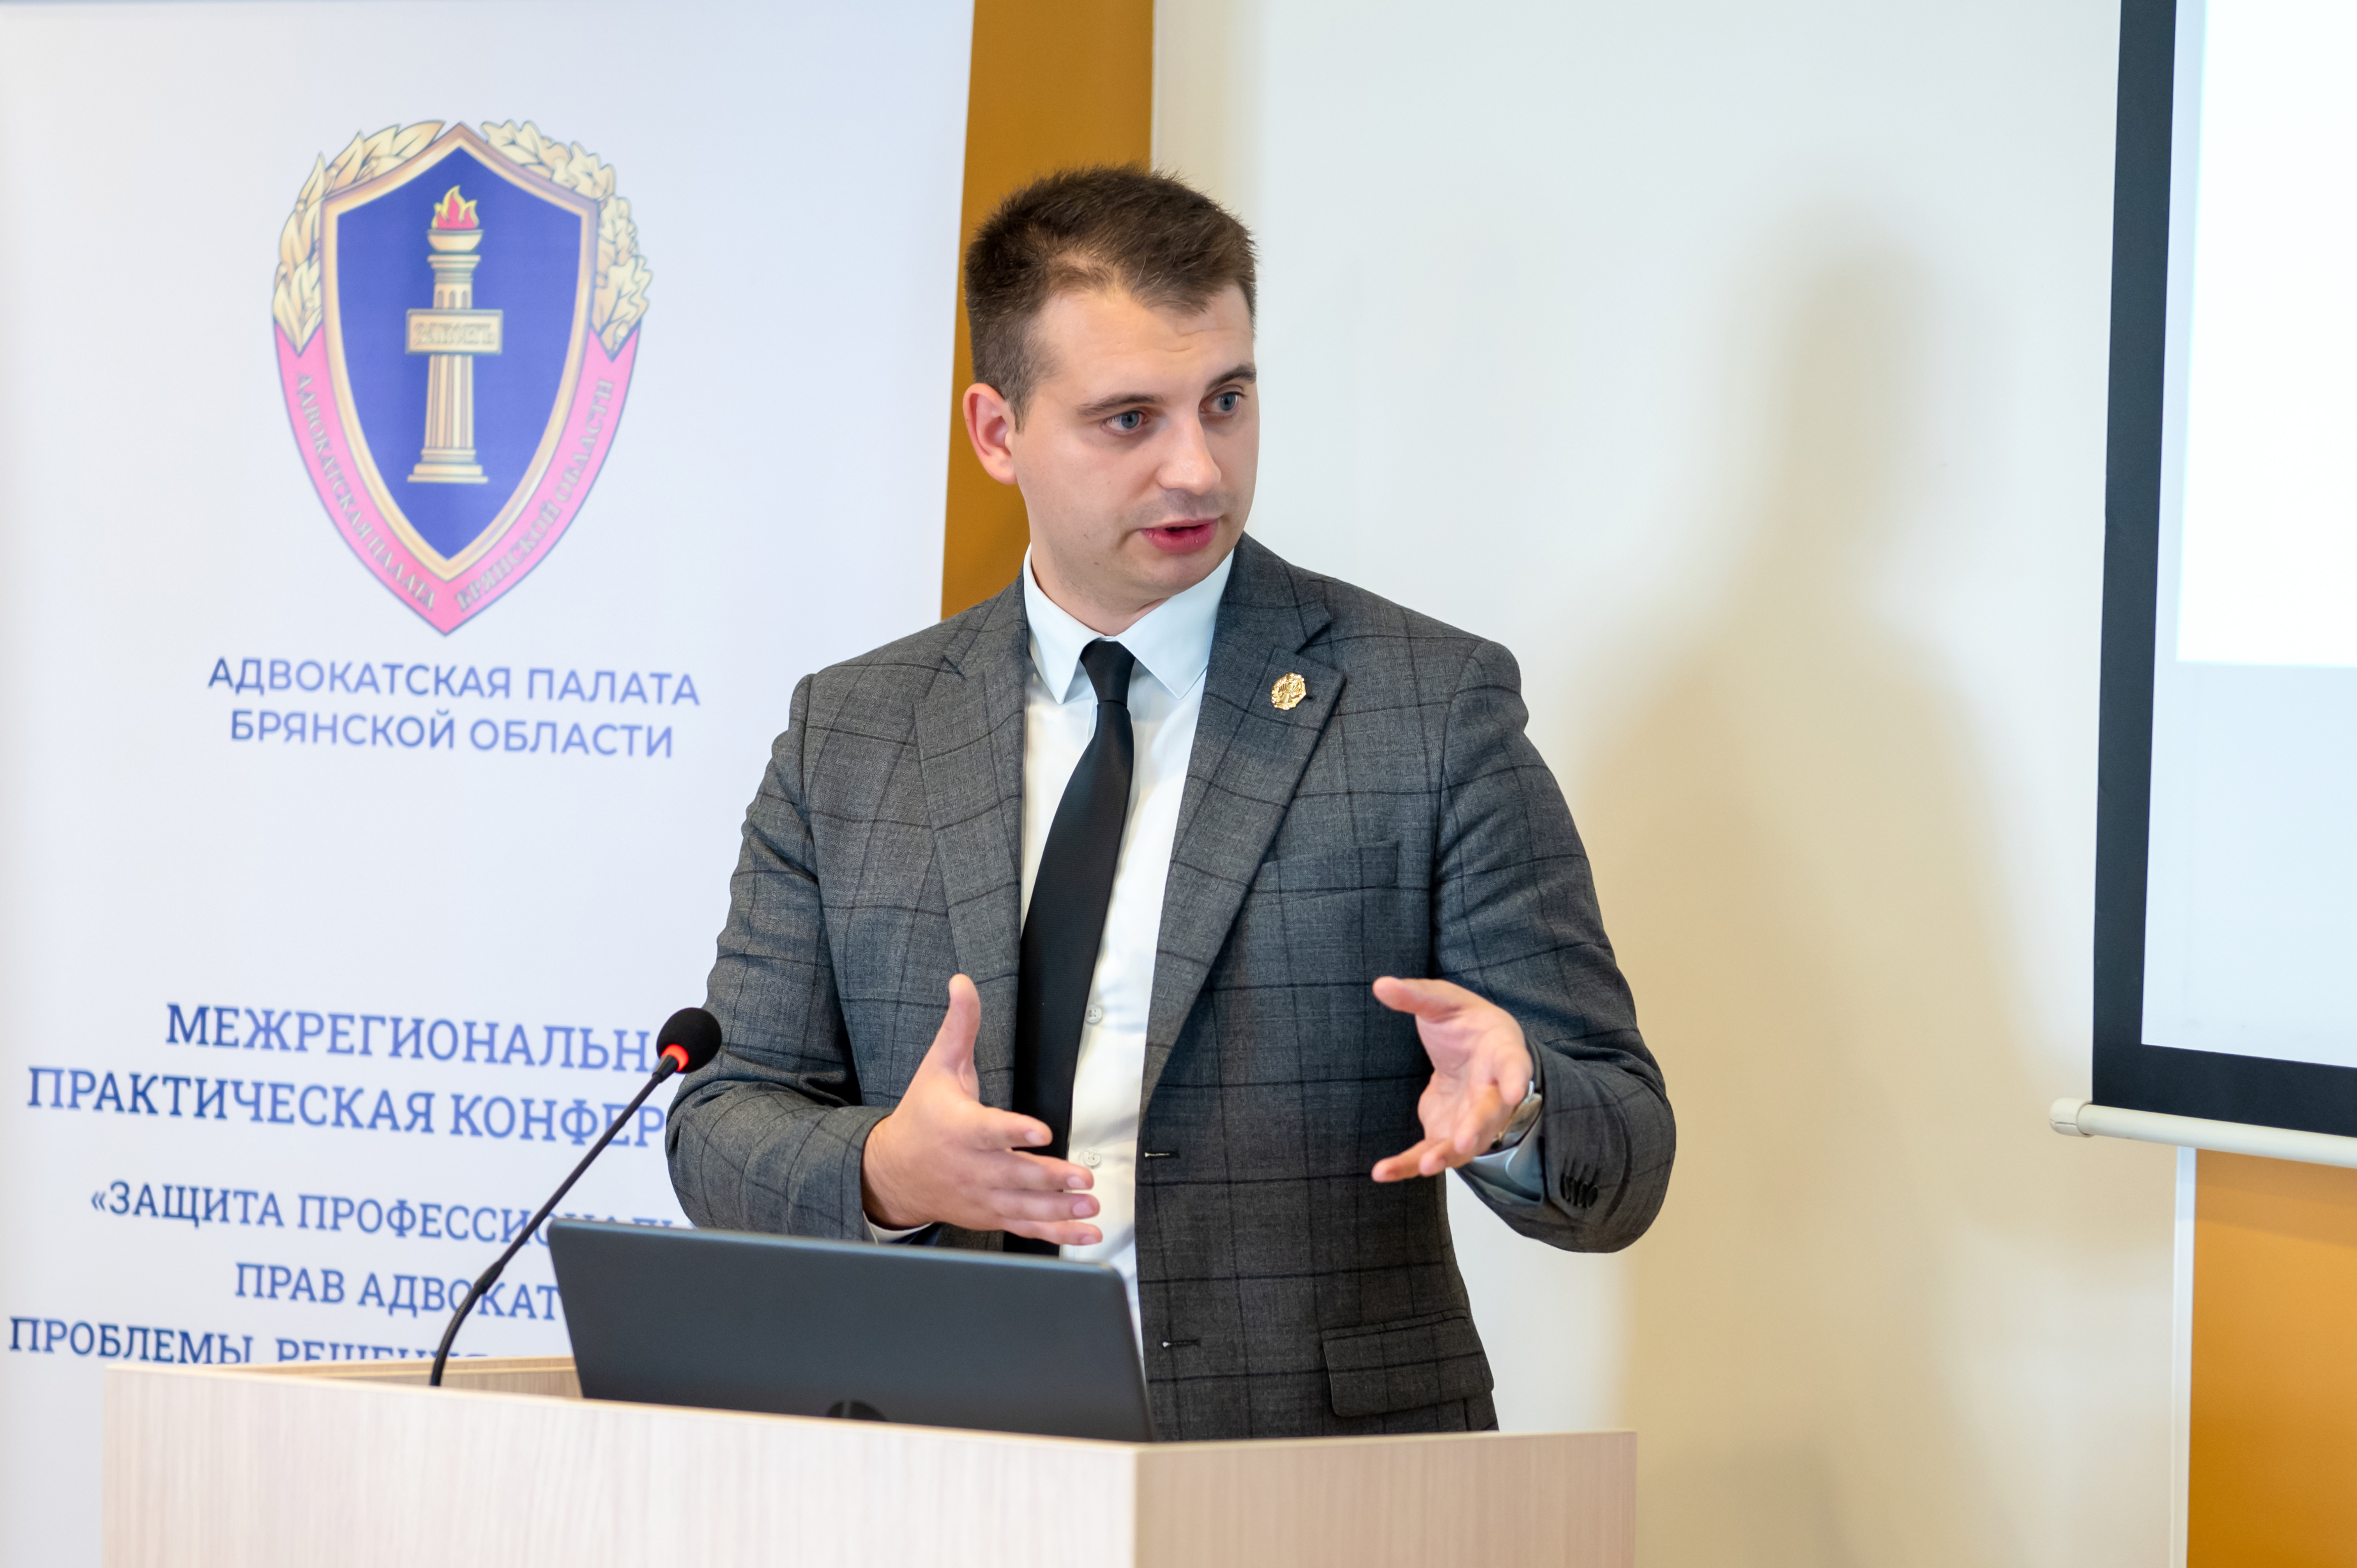 Адвокаты Гомельской областной коллегии приняли участие в международной конференции в Брянске